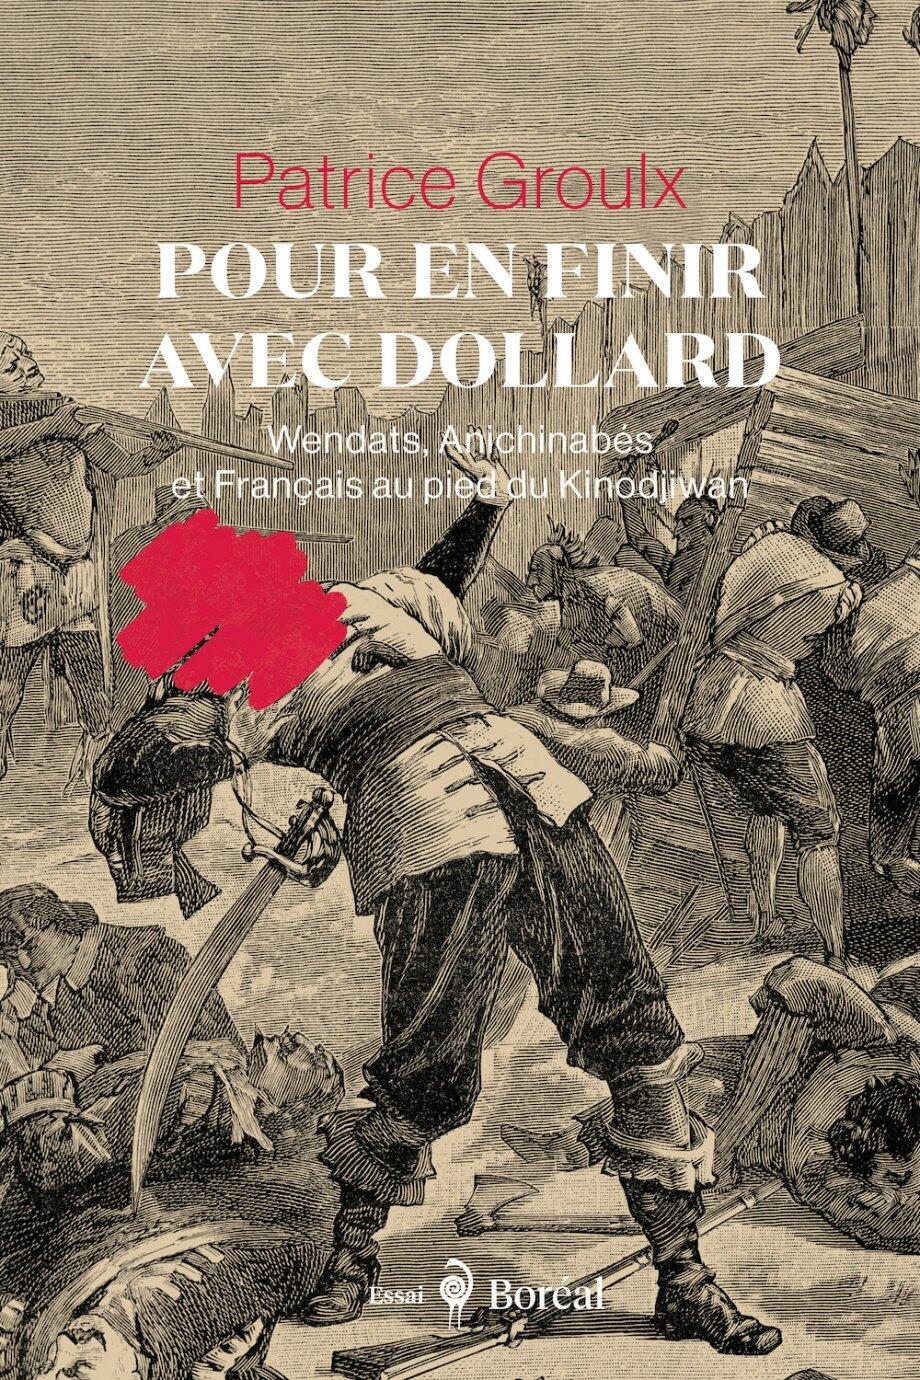 Patrice Groulx - Pour en finir avec Dollard : Wendats, Anichinabés et Français au pied du Kinodjiwan